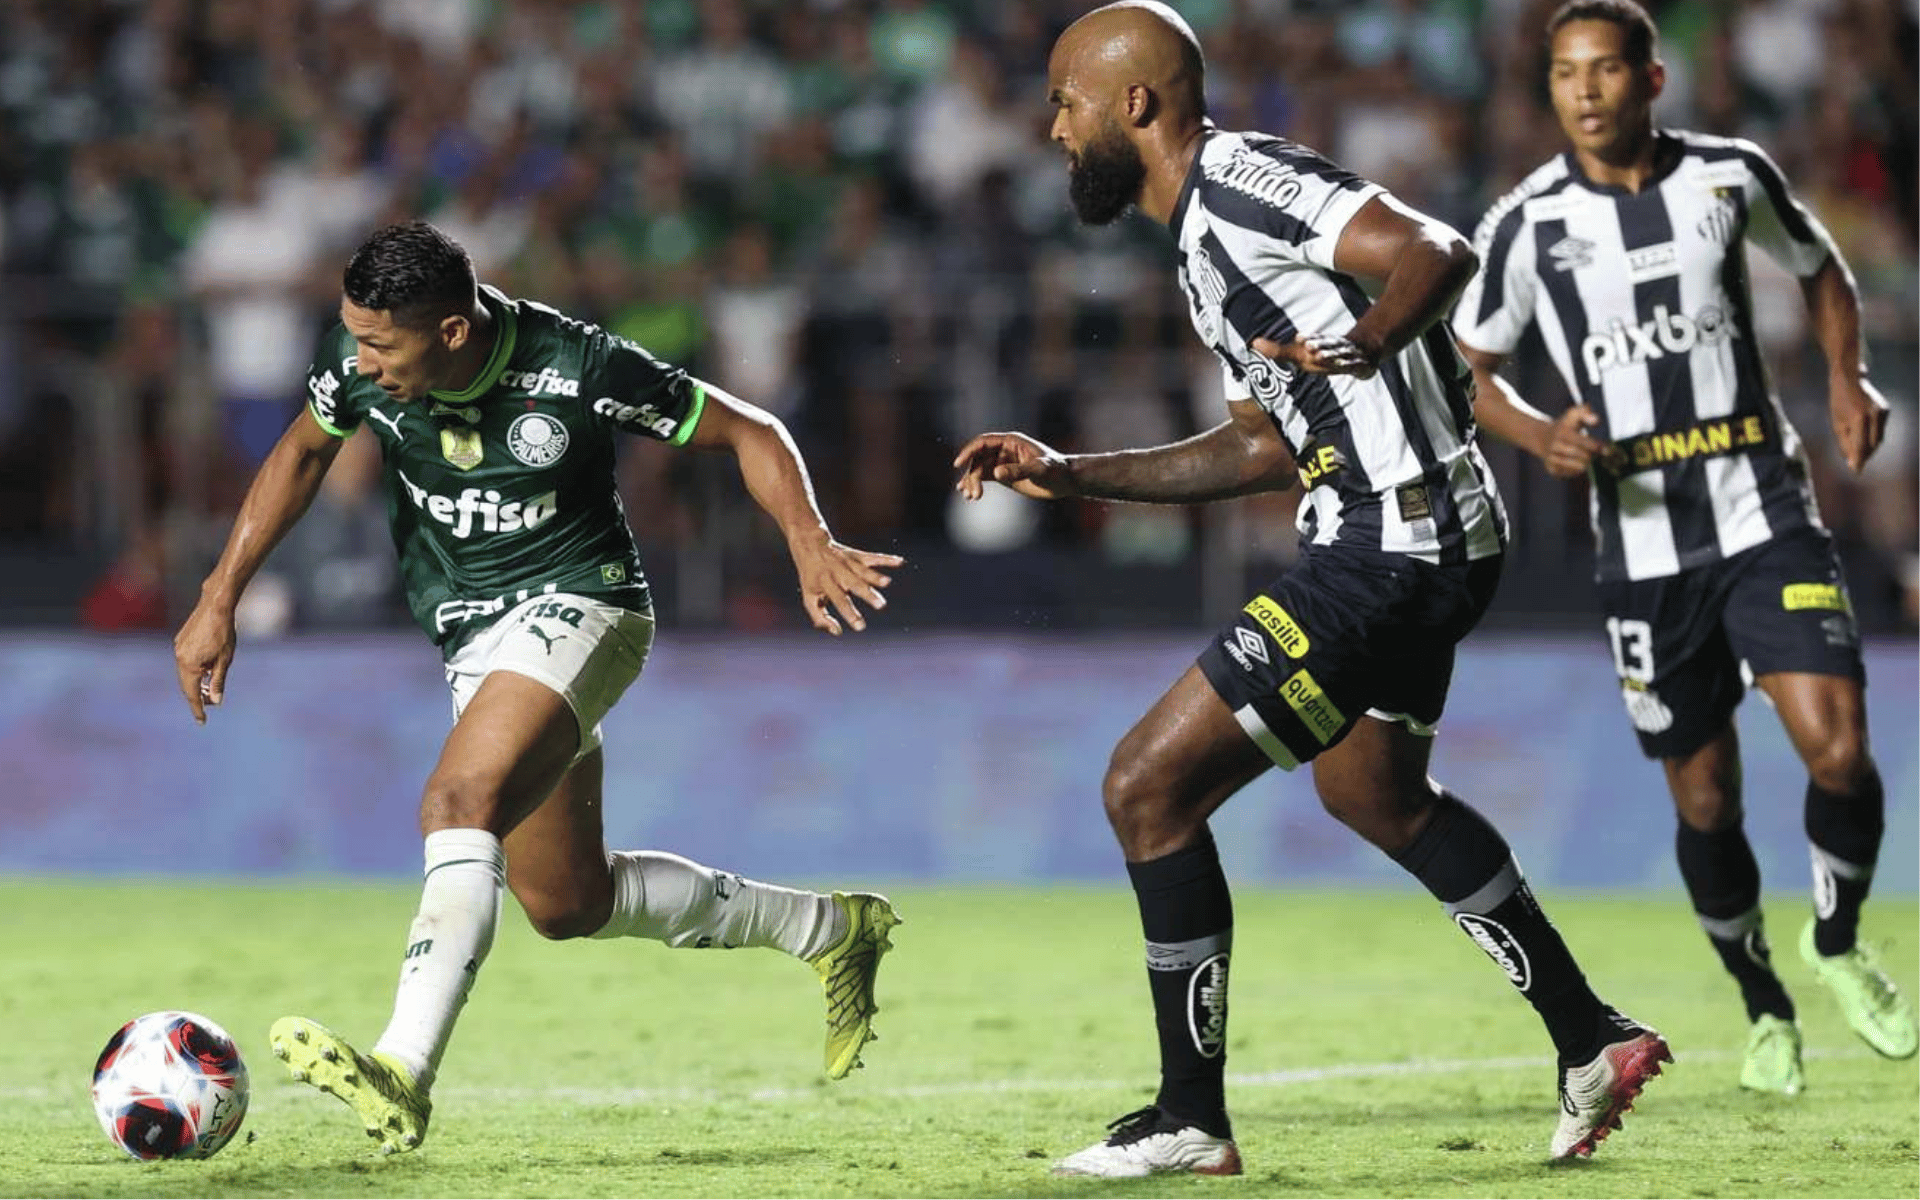 Palmeiras x Botafogo-SP